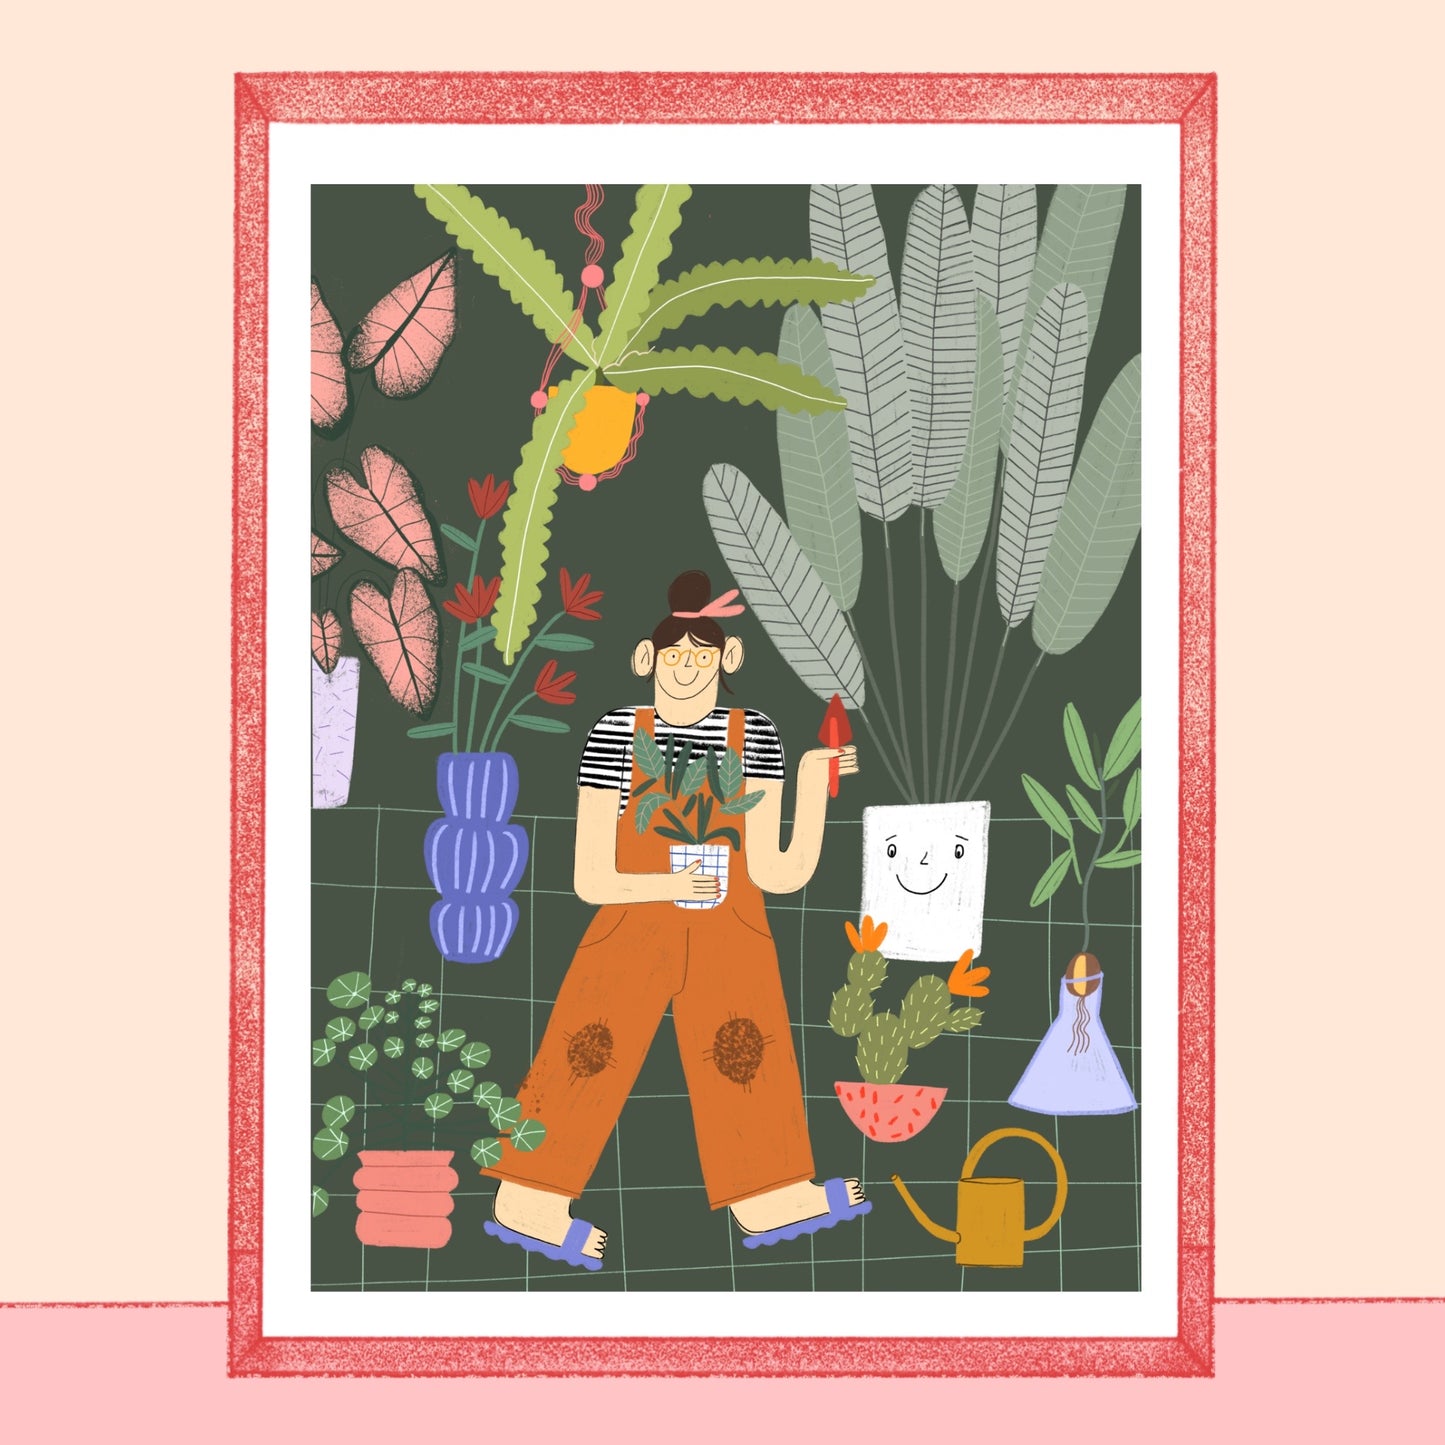 Plakat z dziewczyną wśród roślin